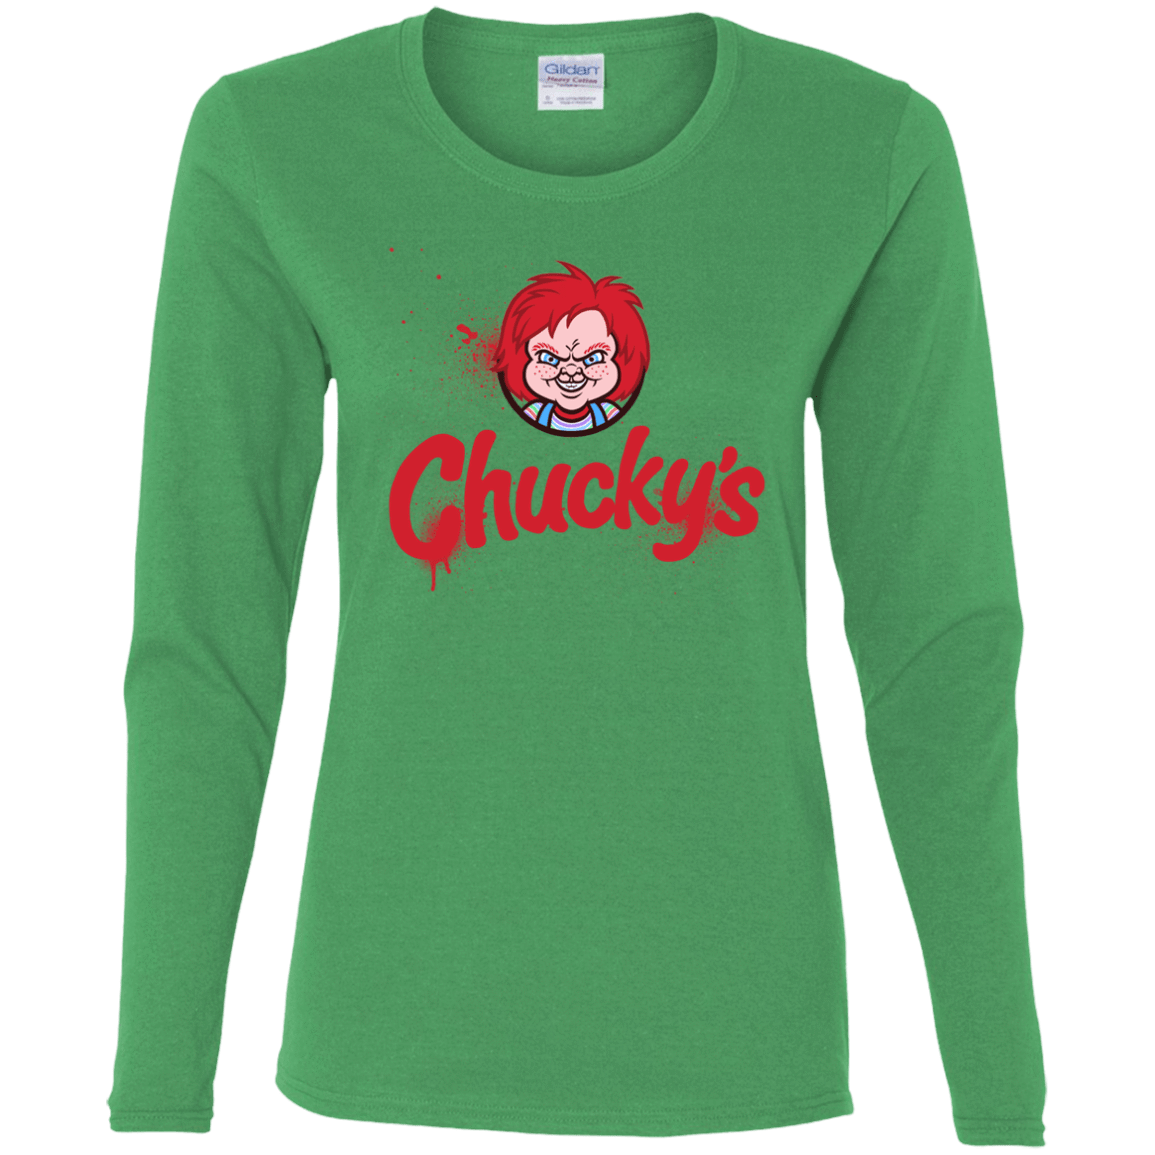 T-Shirts Irish Green / S Chuckys Logo Women's Long Sleeve T-Shirt